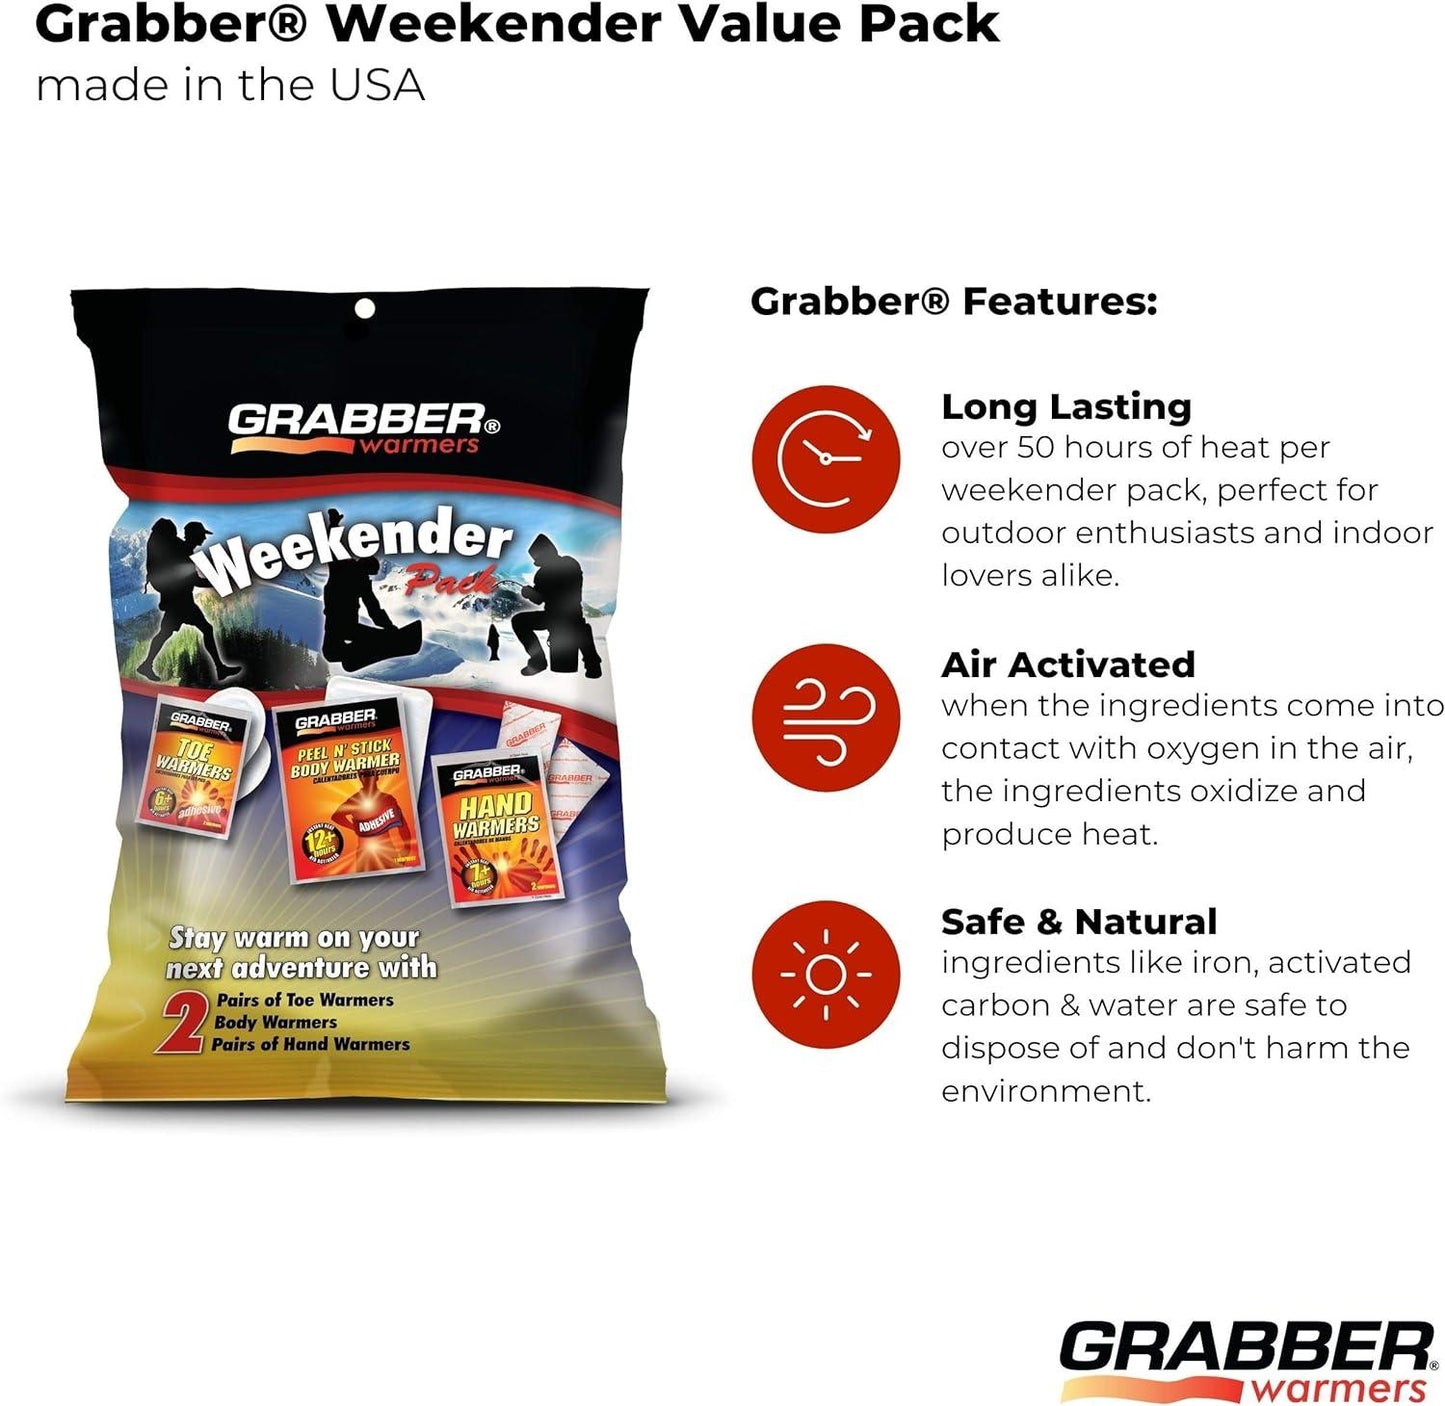 Grabber Warmers Weekender Multi-Warmer Pack, 2 Pair Hand, 2 Pair Toe, 2 Peel N' Stick Body Warmers, 6-Count - TRAPSKI, LLC